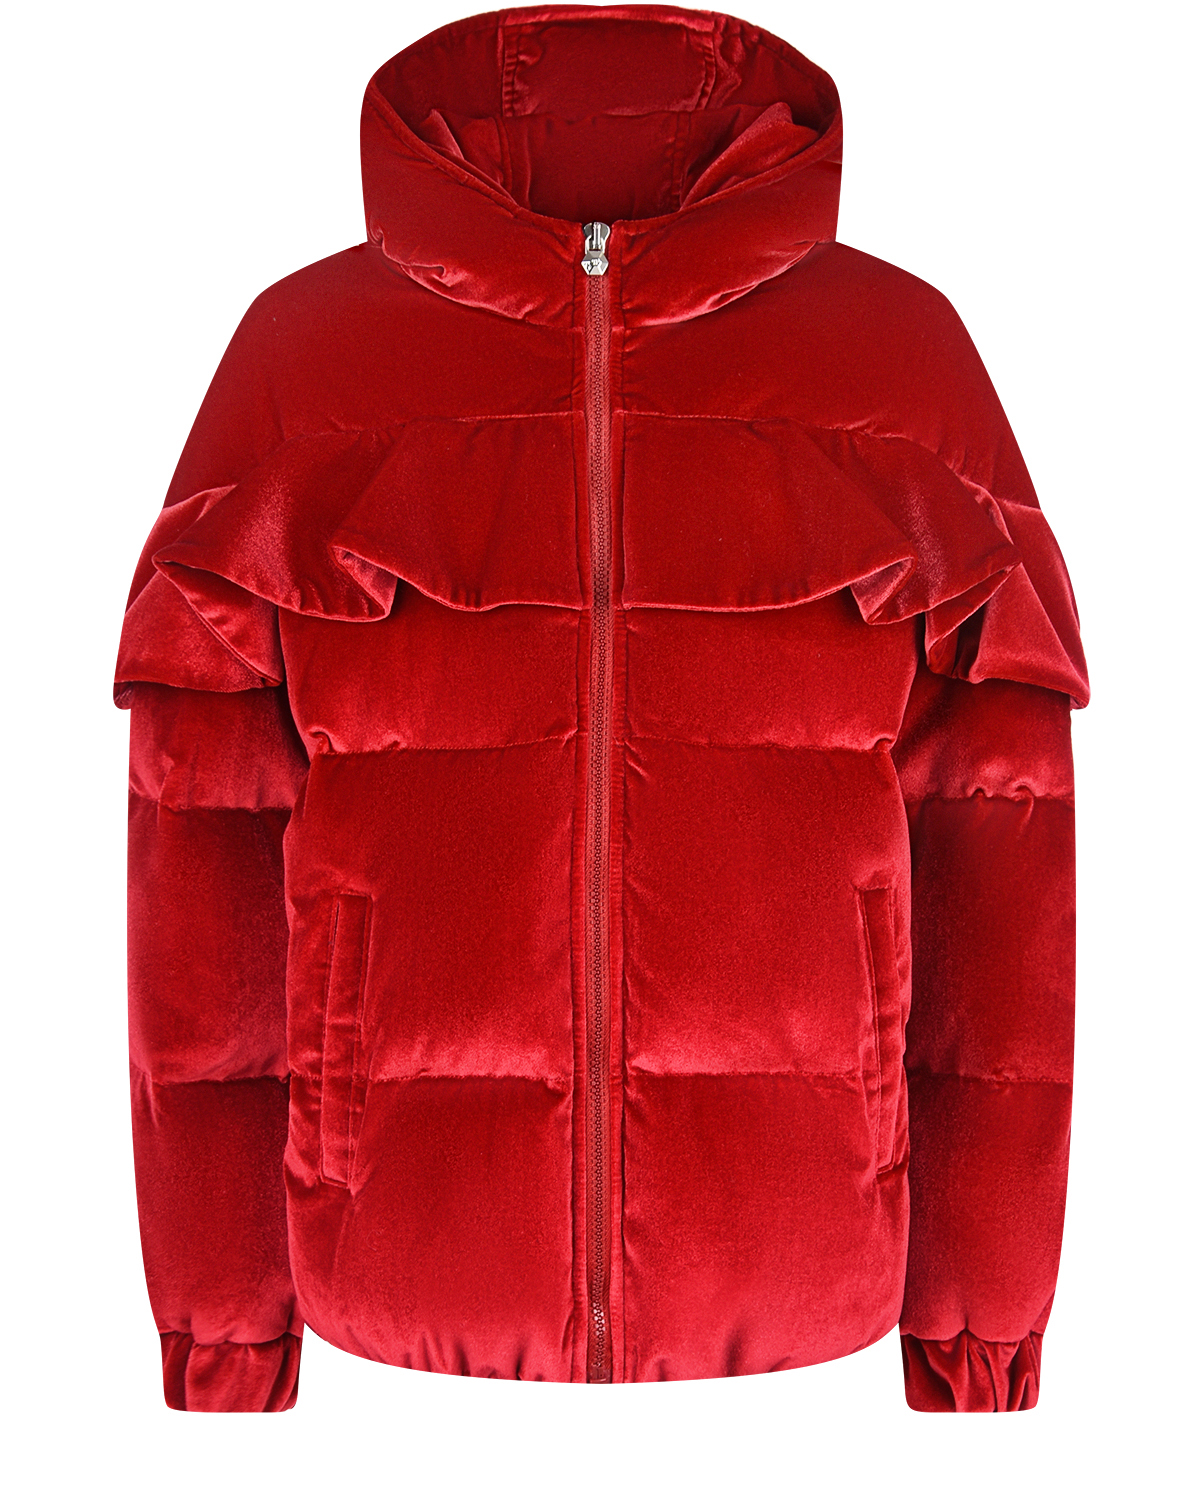 Красная бархатная куртка с воланом Philipp Plein детская